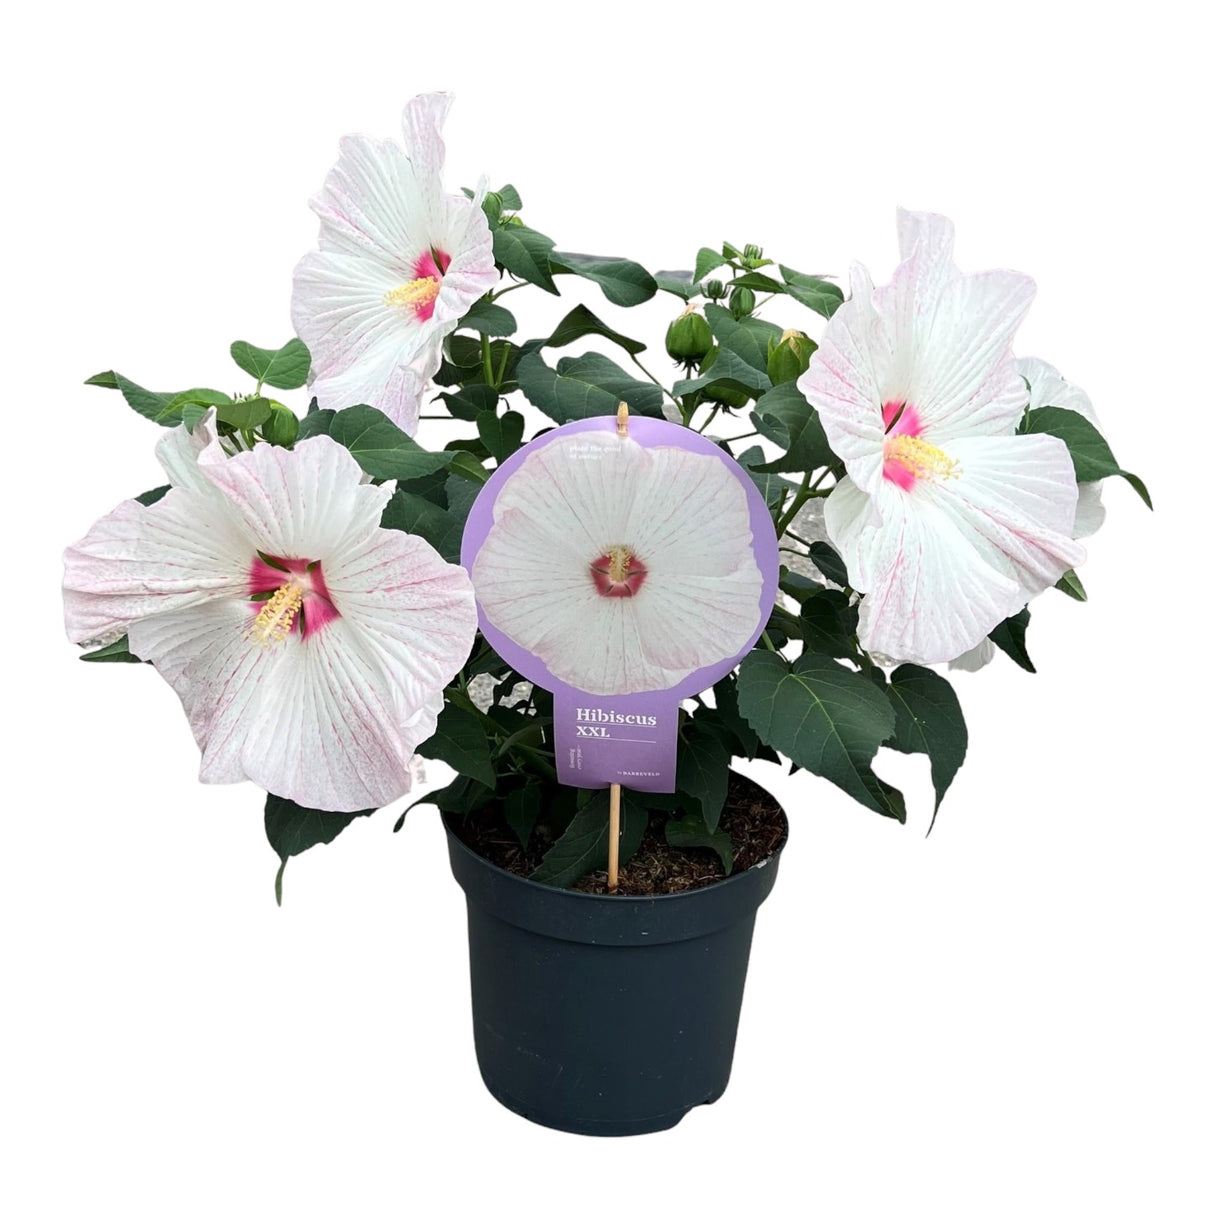 Hibiscus XXL blanc - plante fleurie d'extérieur